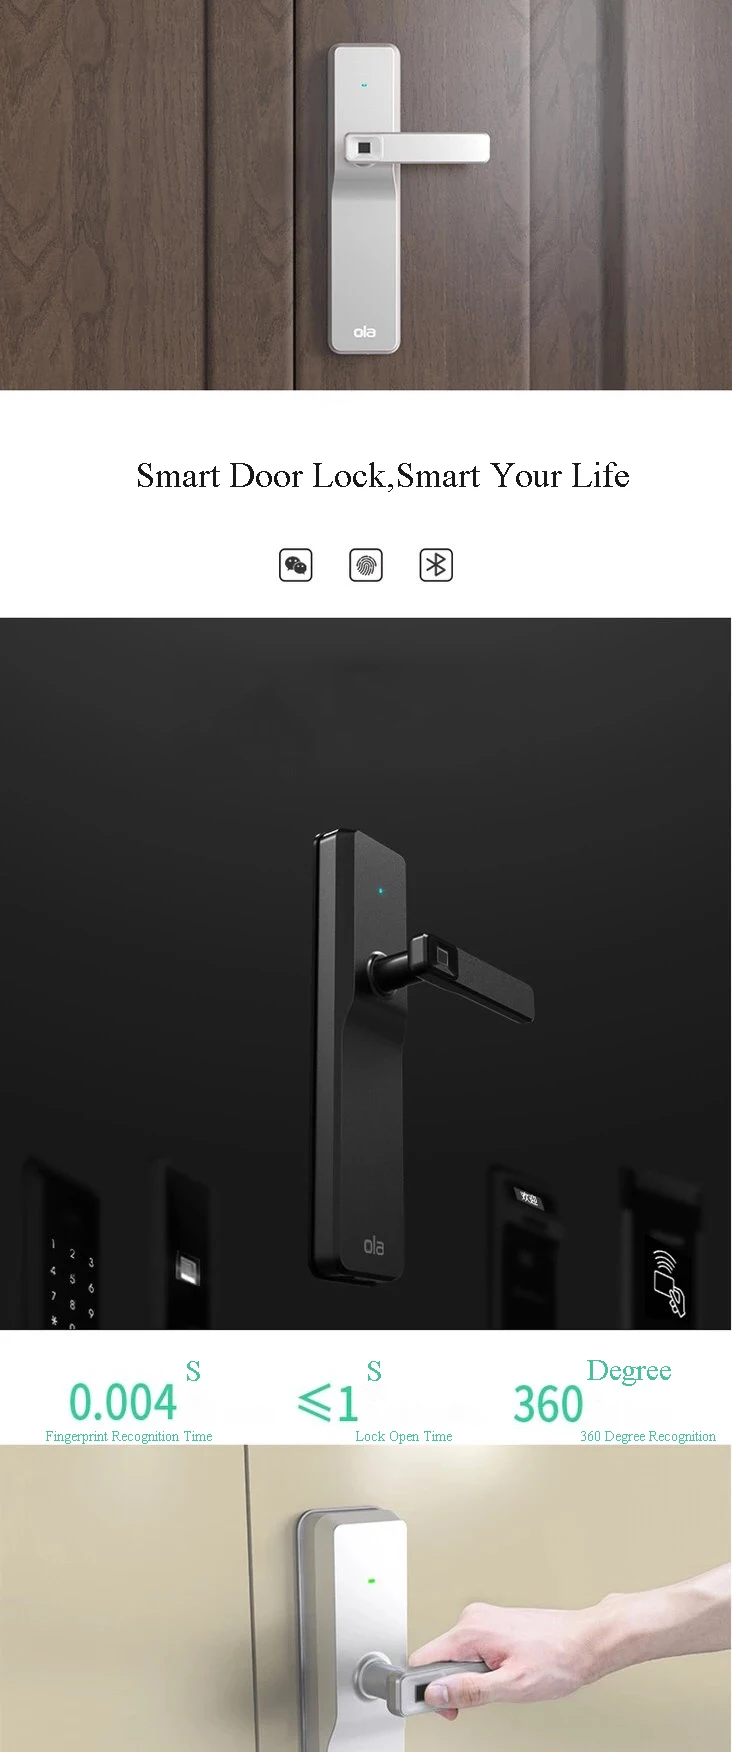 HFSECURITY Digital Smart отпечатков пальцев дверные замки телефон приложение дистанционного Управление Электрический безопасности электронные Ола х Bluetooth замки